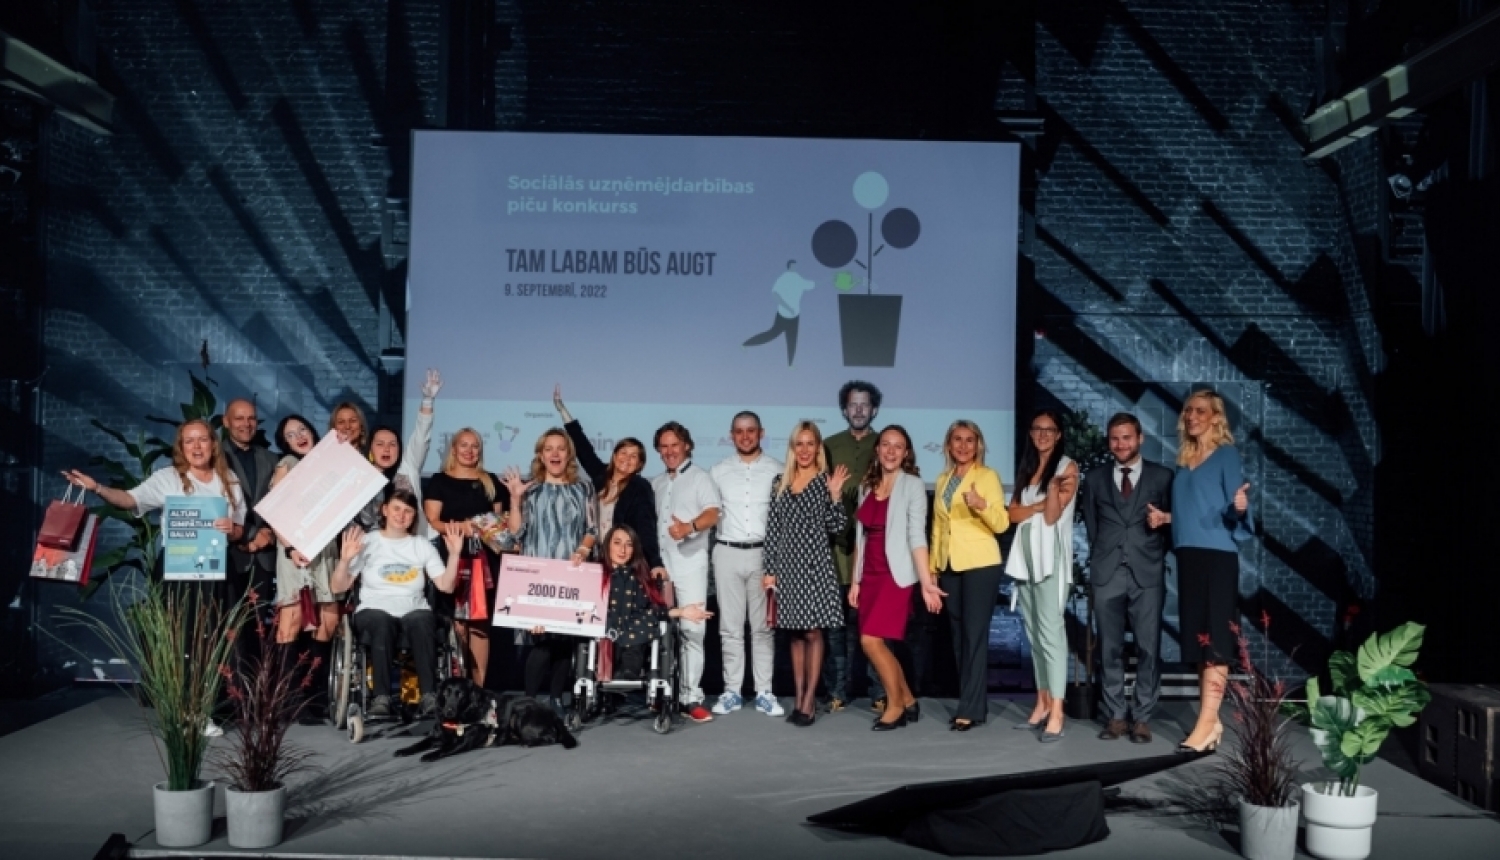 Sociālās uzņēmējdarbības piču konkursā uzvar Branku jauniešu centrs TUVU